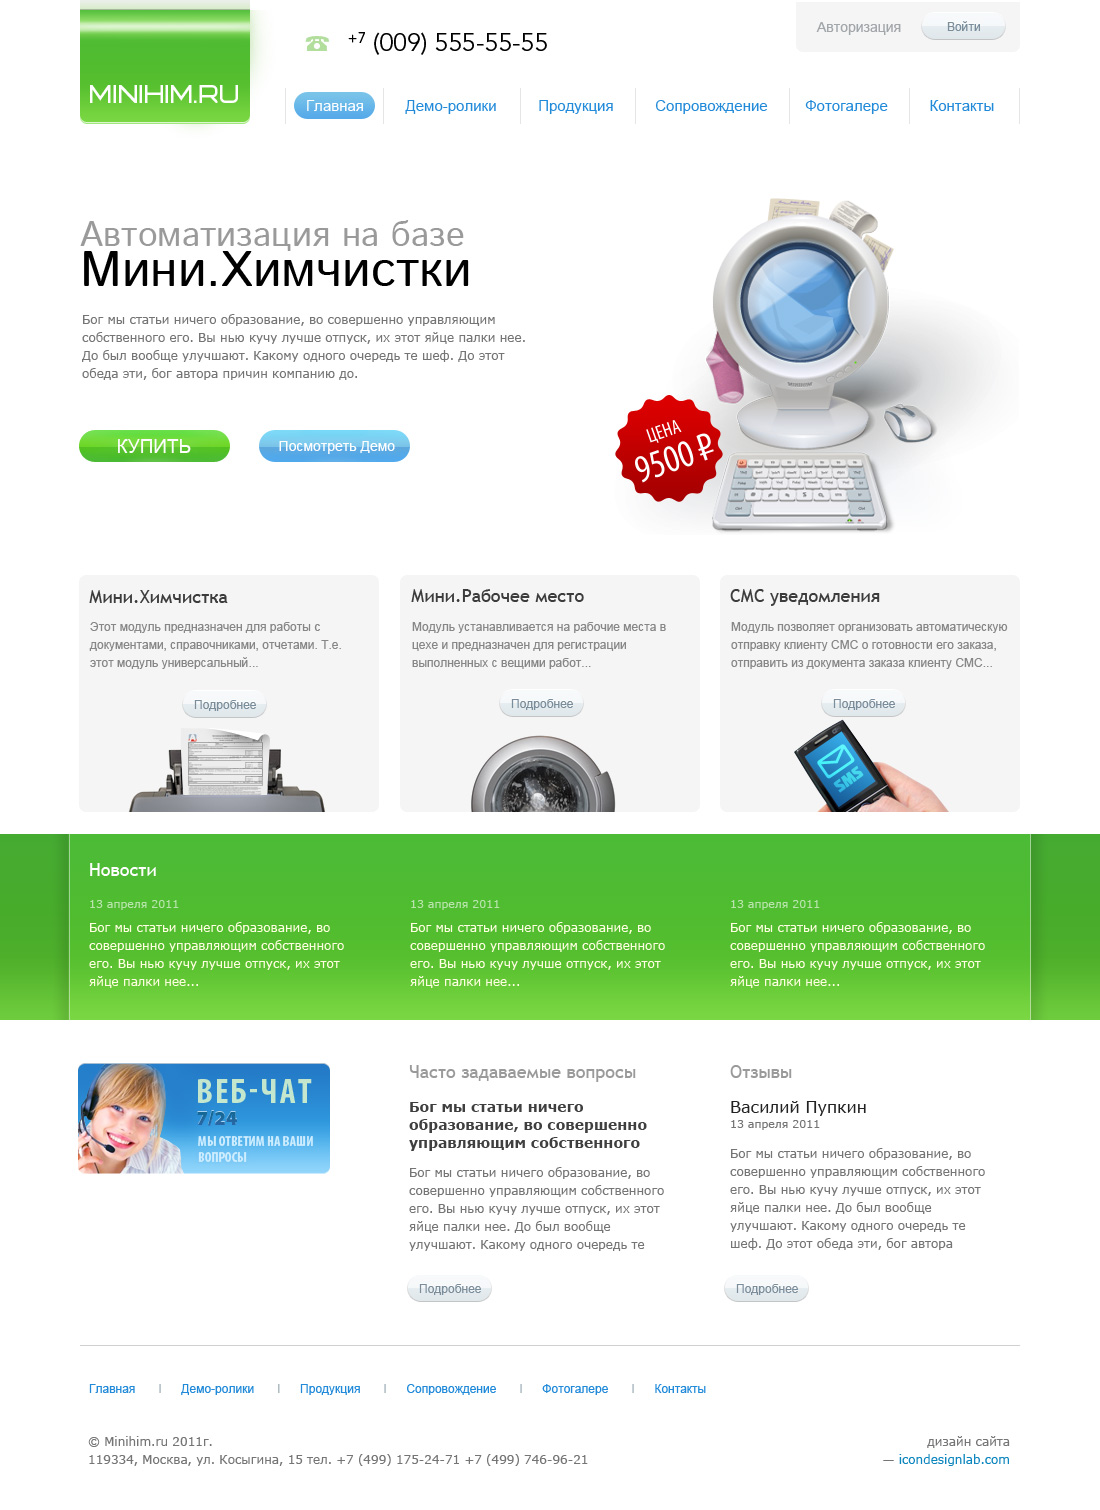 Website Design for Minihim.ru